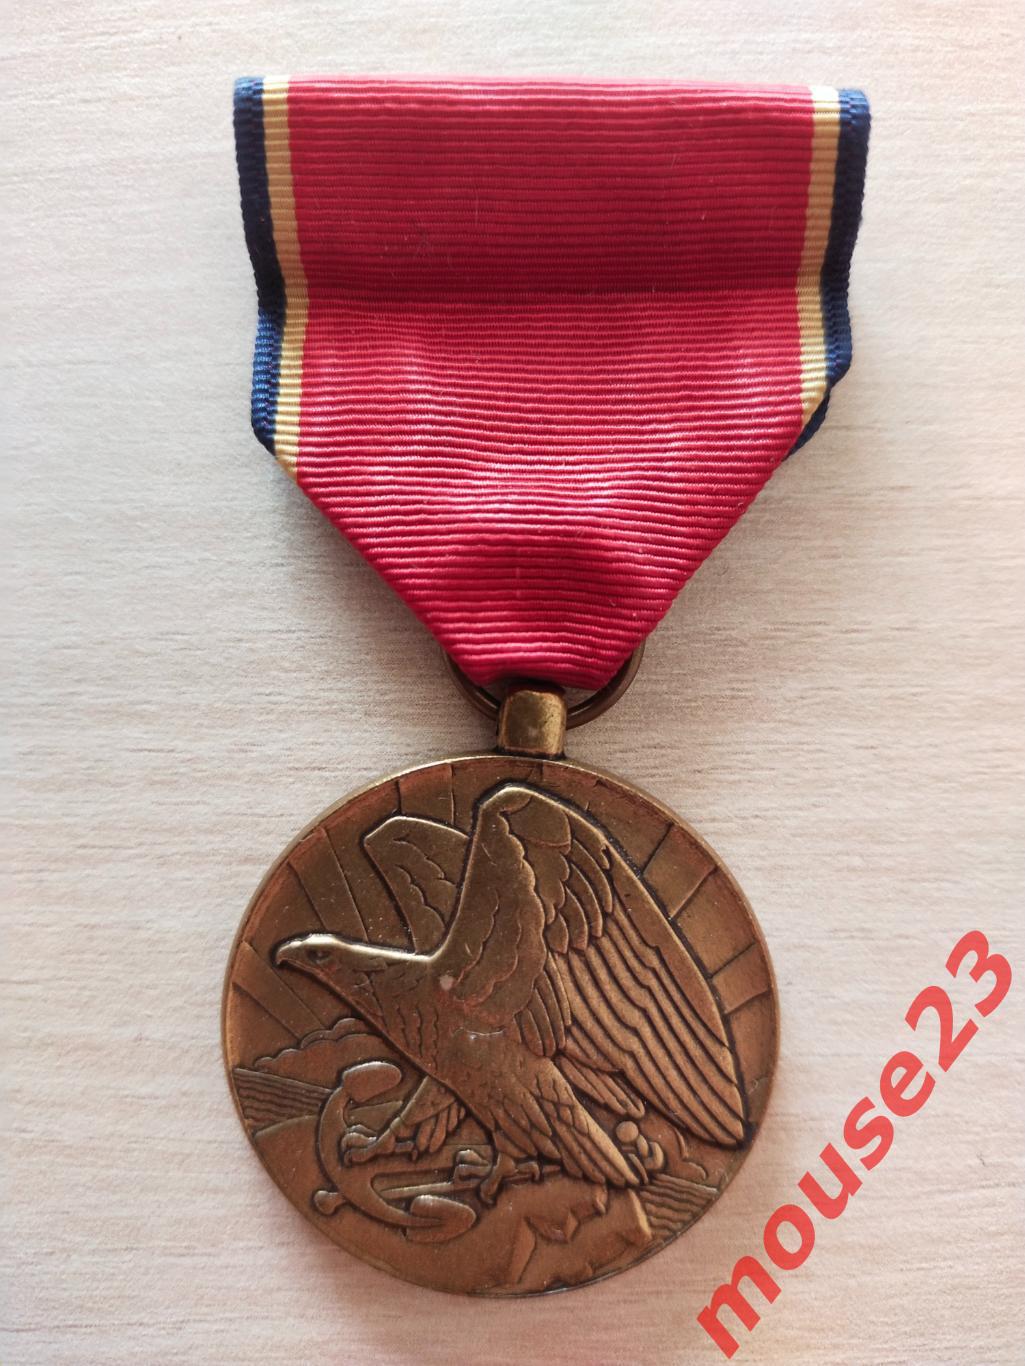 Медаль резерва Военно-морского флота Вооруженных Сил США, учреждена в 1938 году.